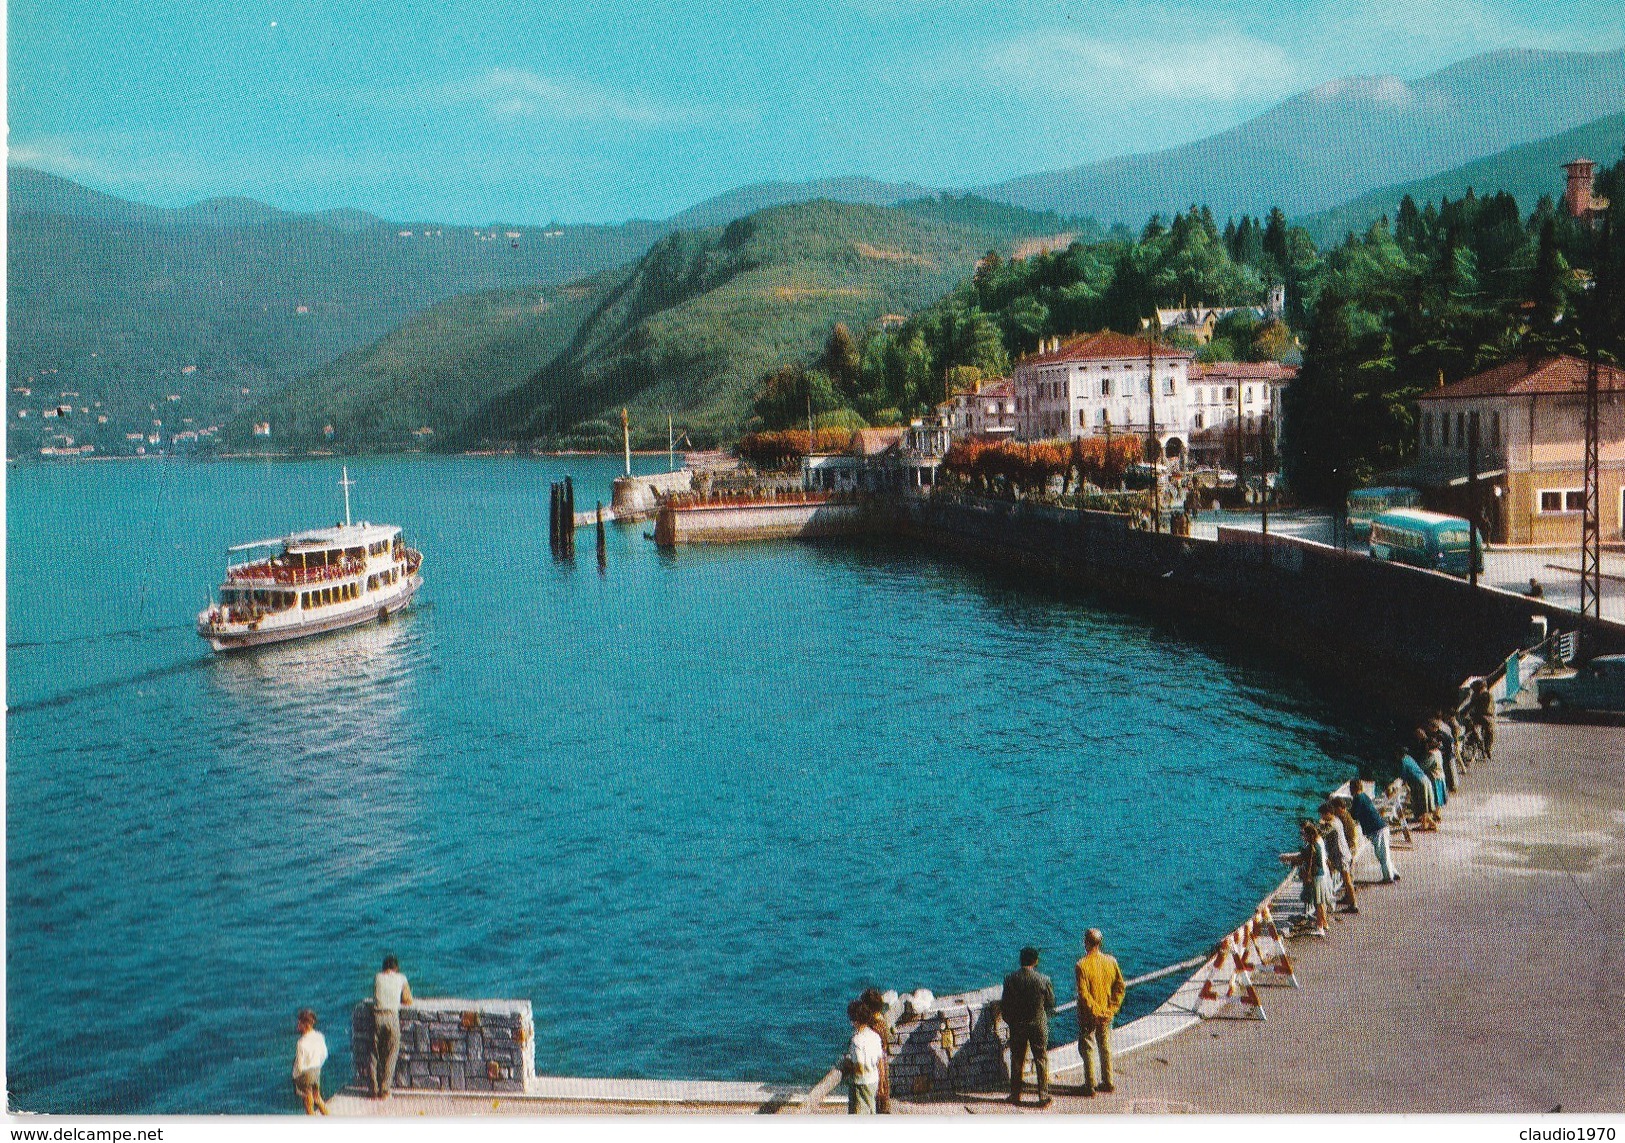 Cartolina - Lago Maggiore Luino (varese) - Luino